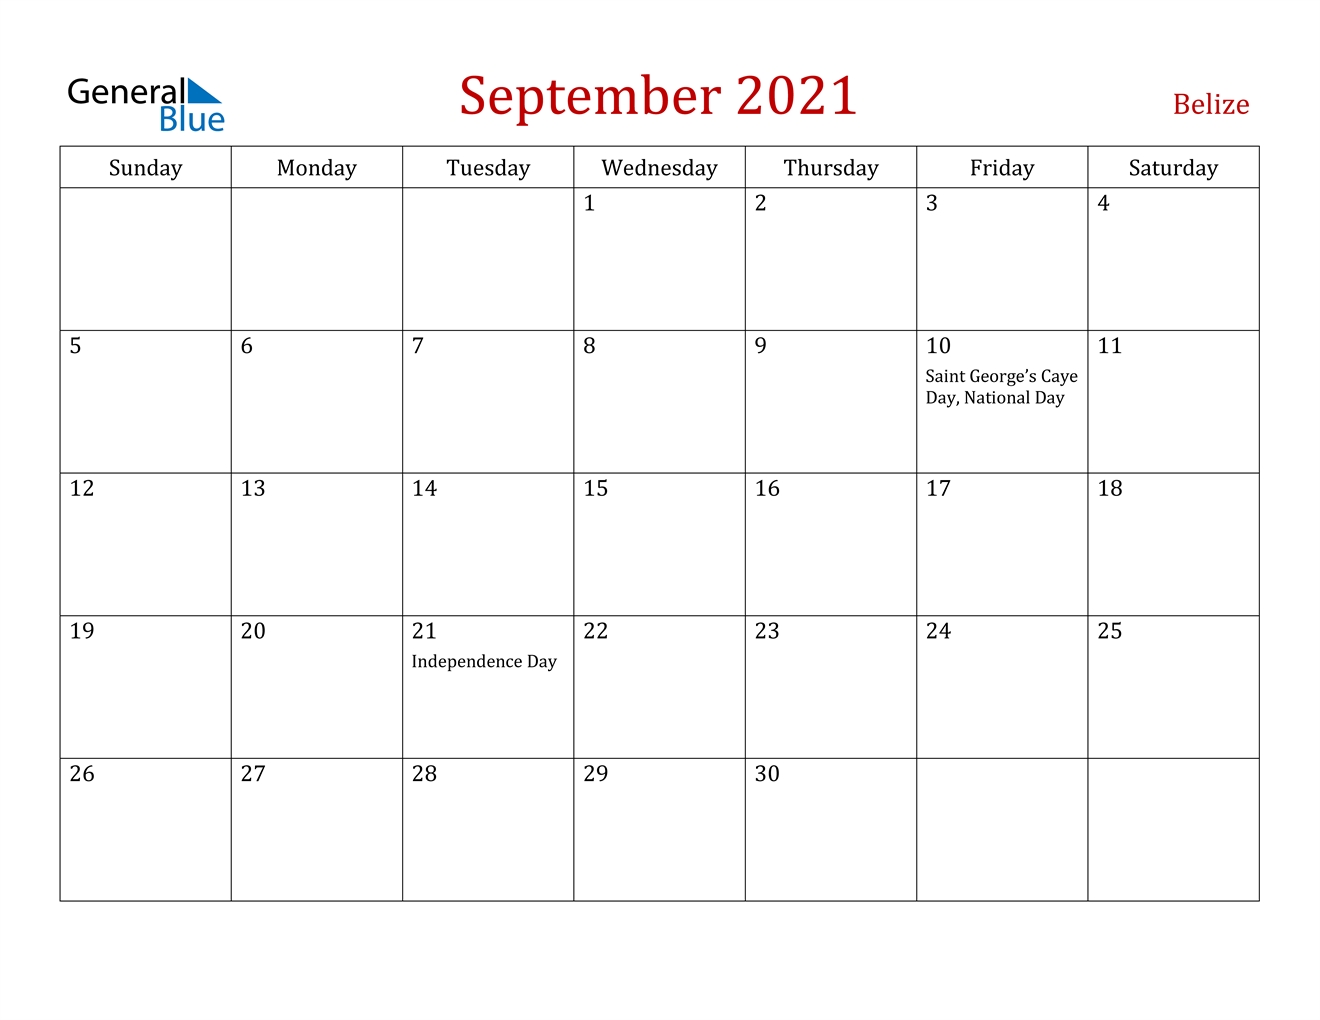 September 2021 Calendar - Belize